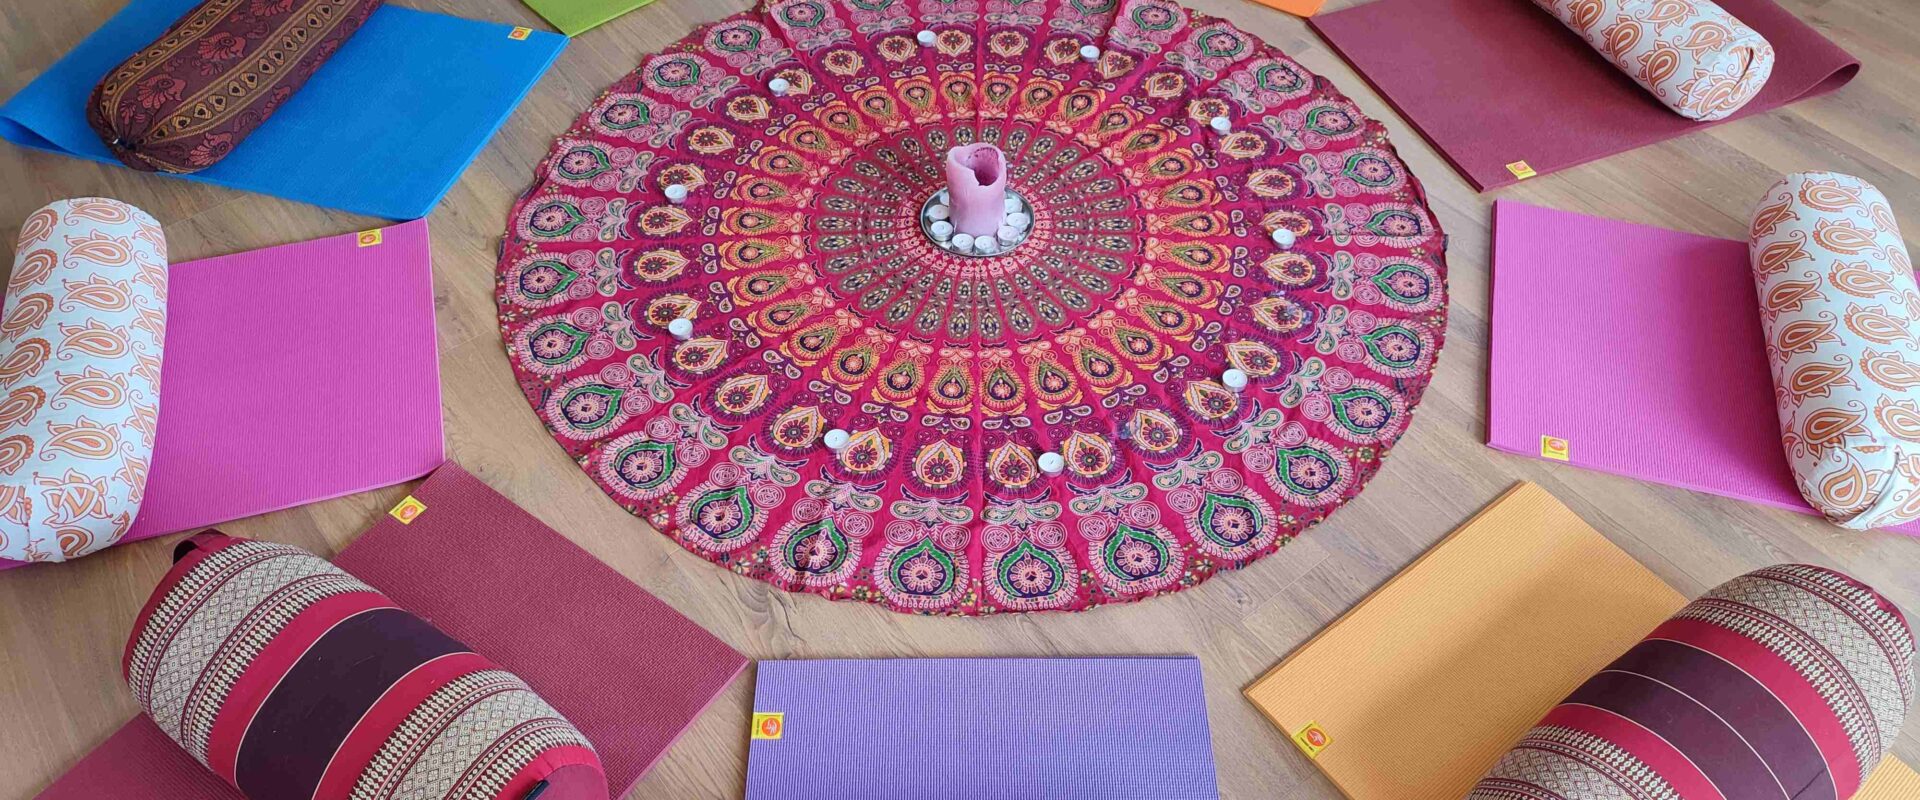 Comment choisir son tapis de yoga